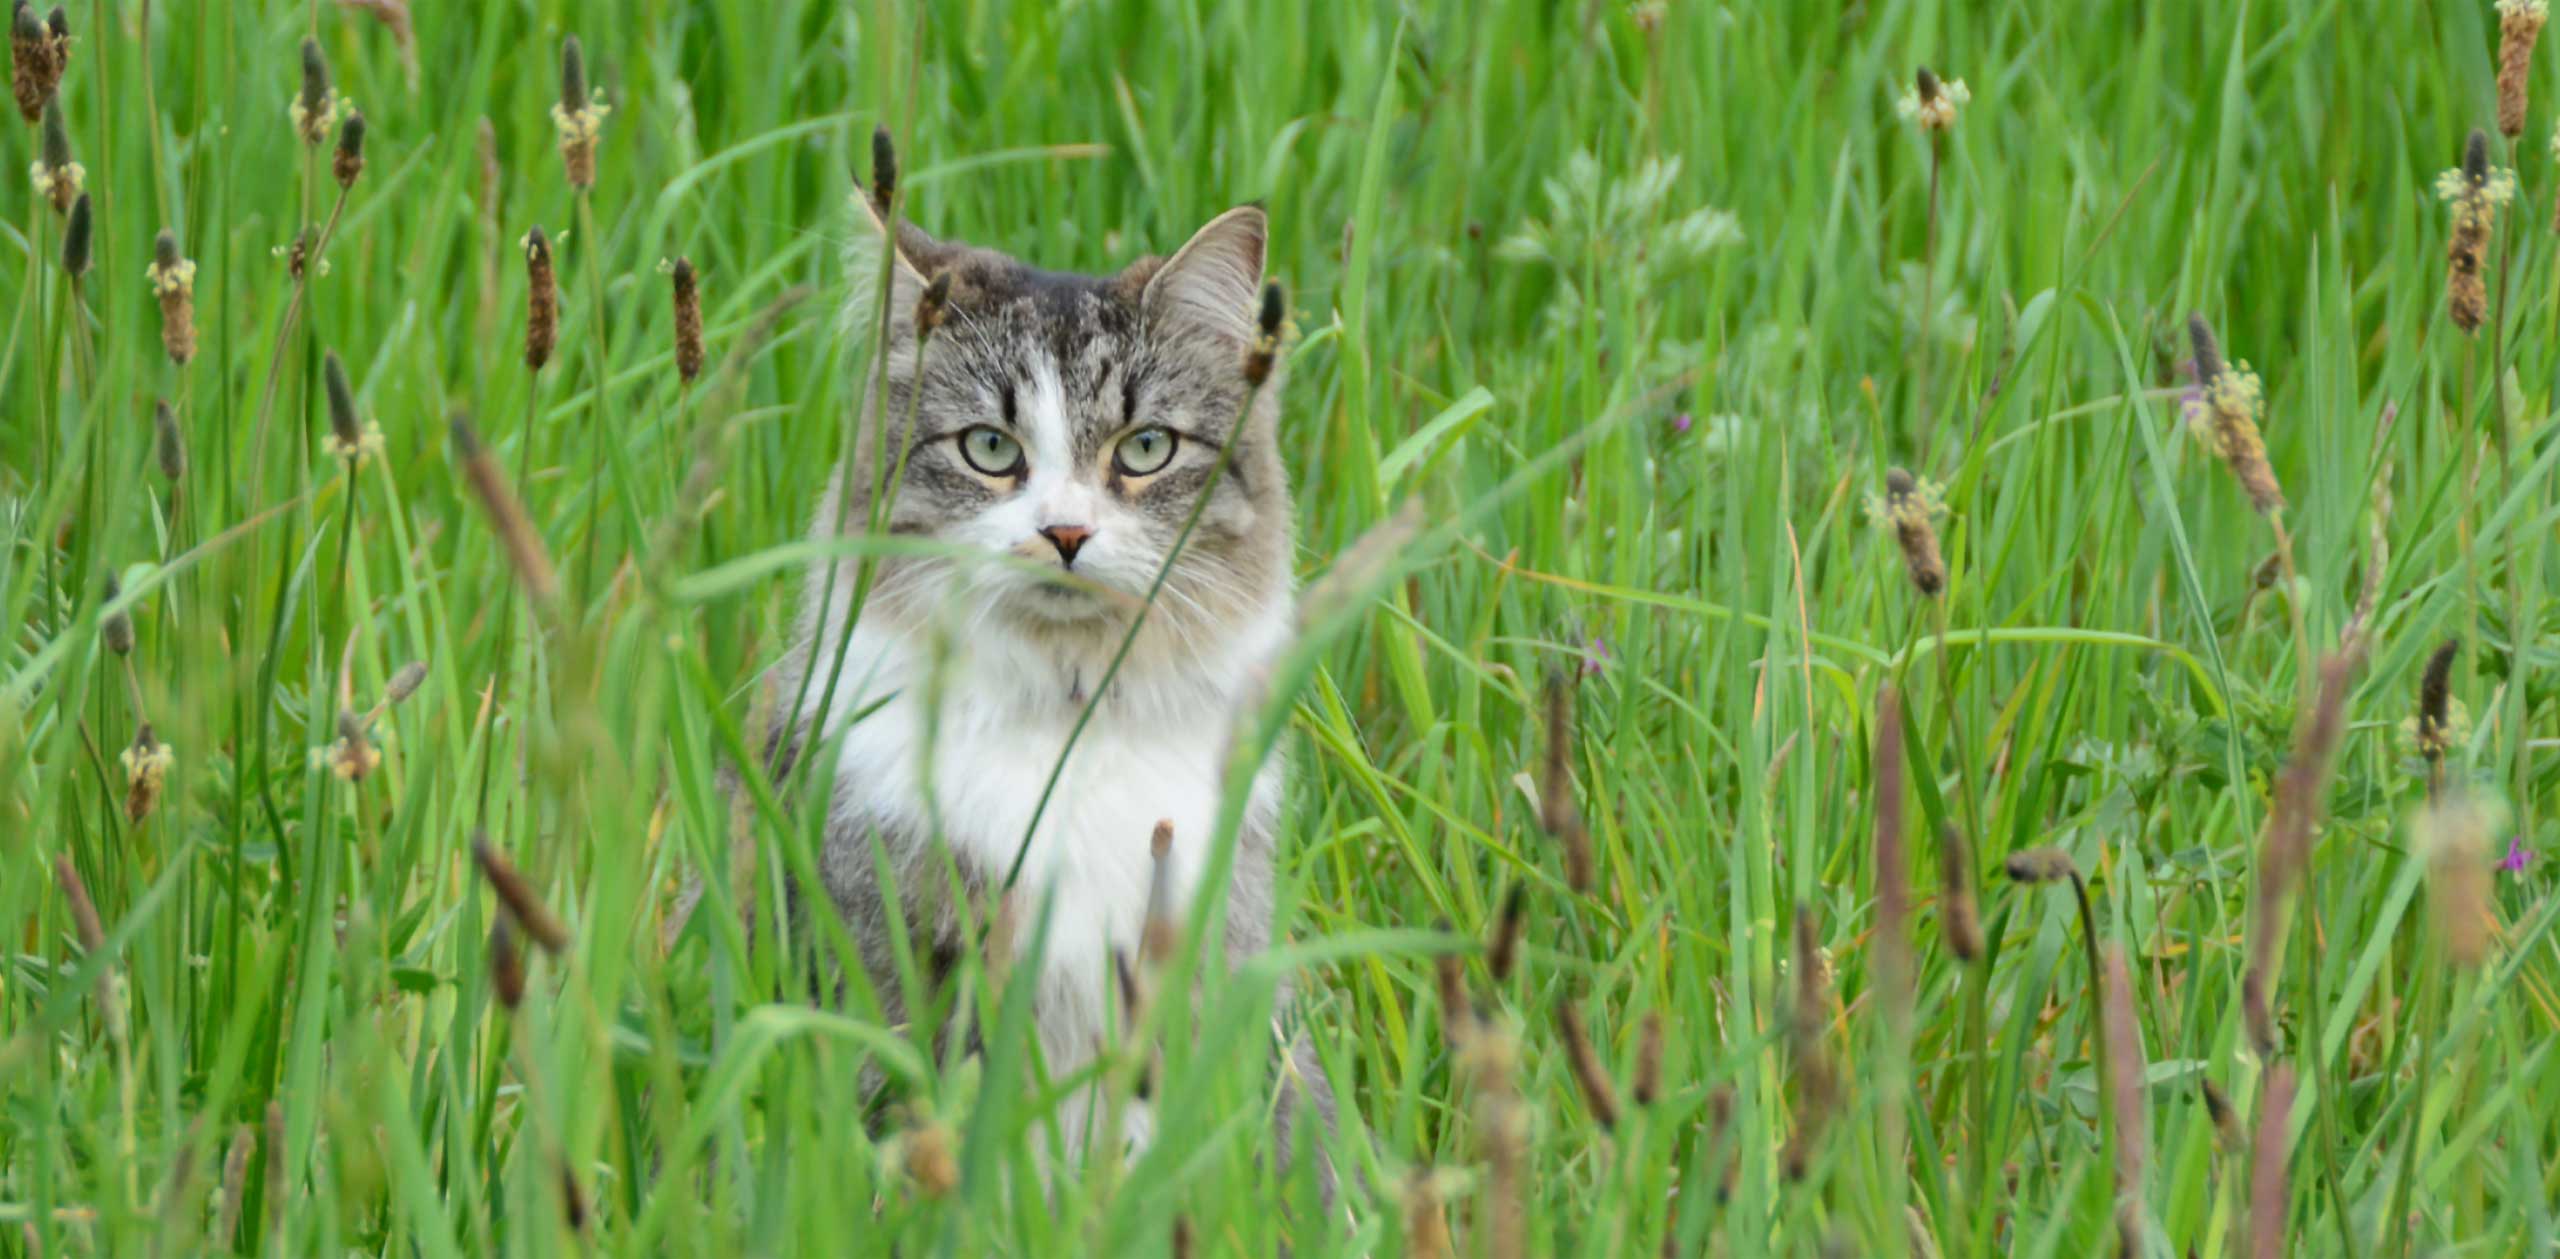 Gato que se esconde en la hierba alta se refiere a los recursos naturales utilizados para la Arena de Madera Go Natural